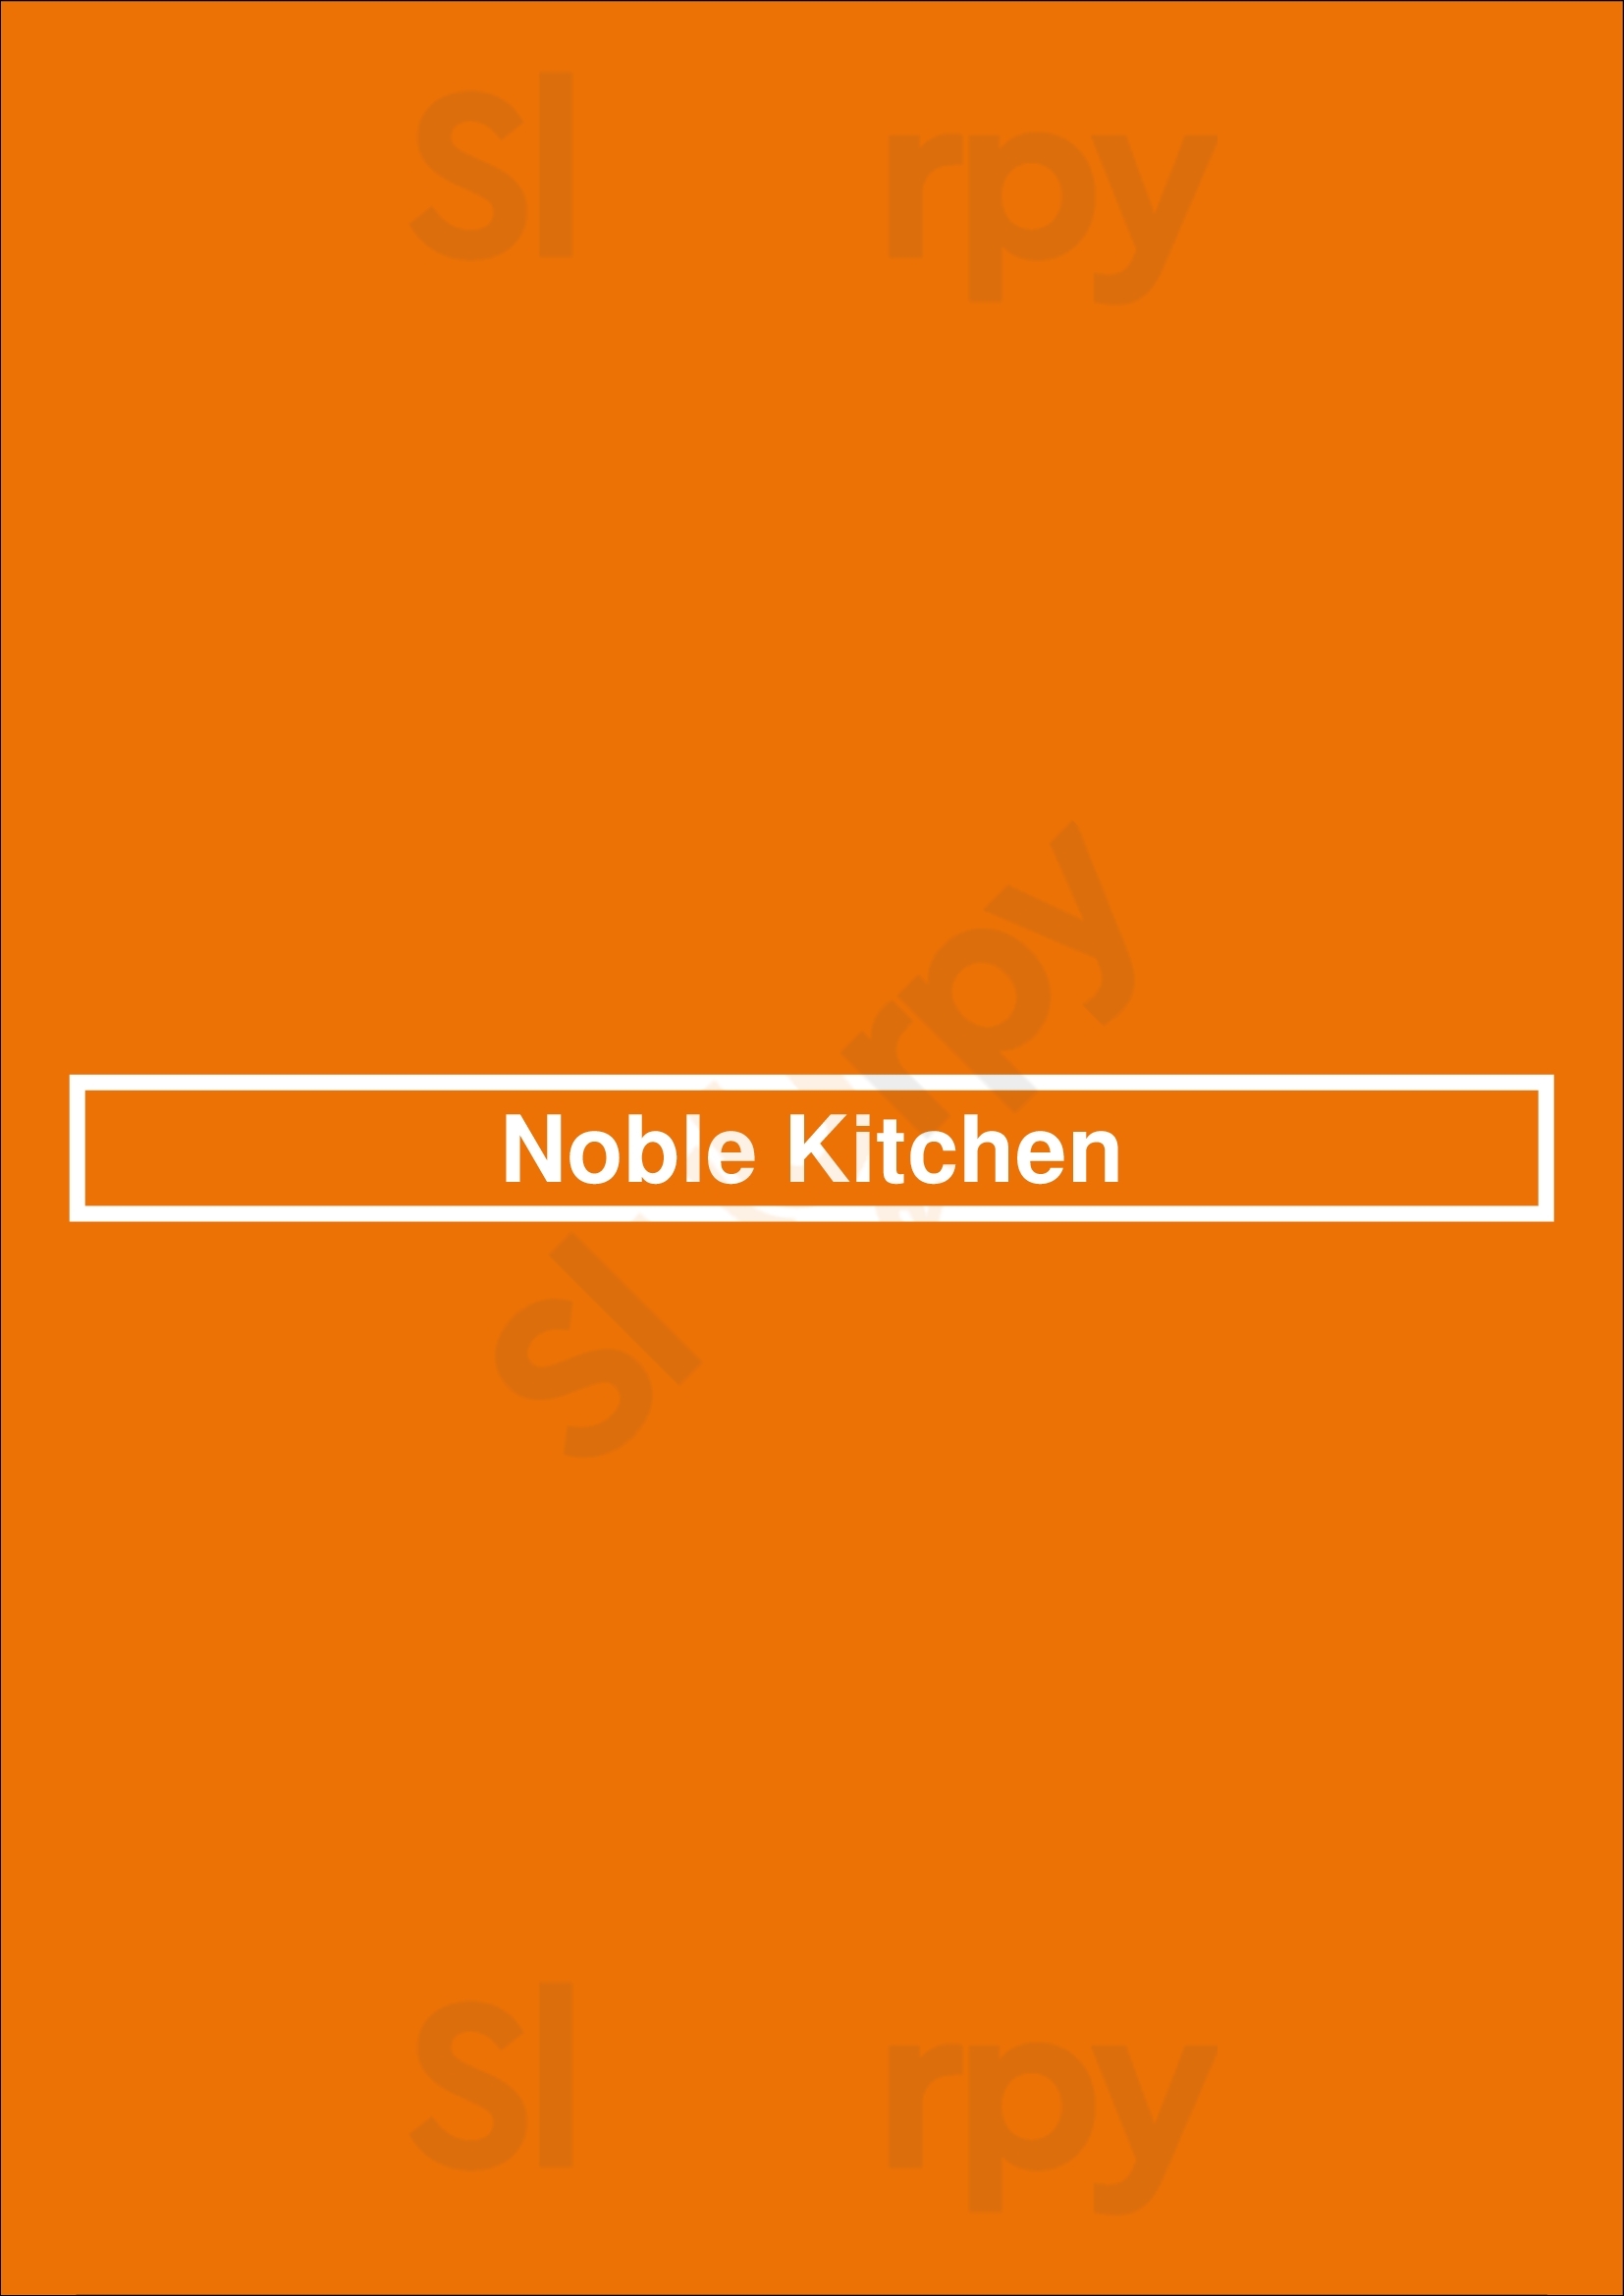 Noble Kitchen Cromvoirt Menu - 1